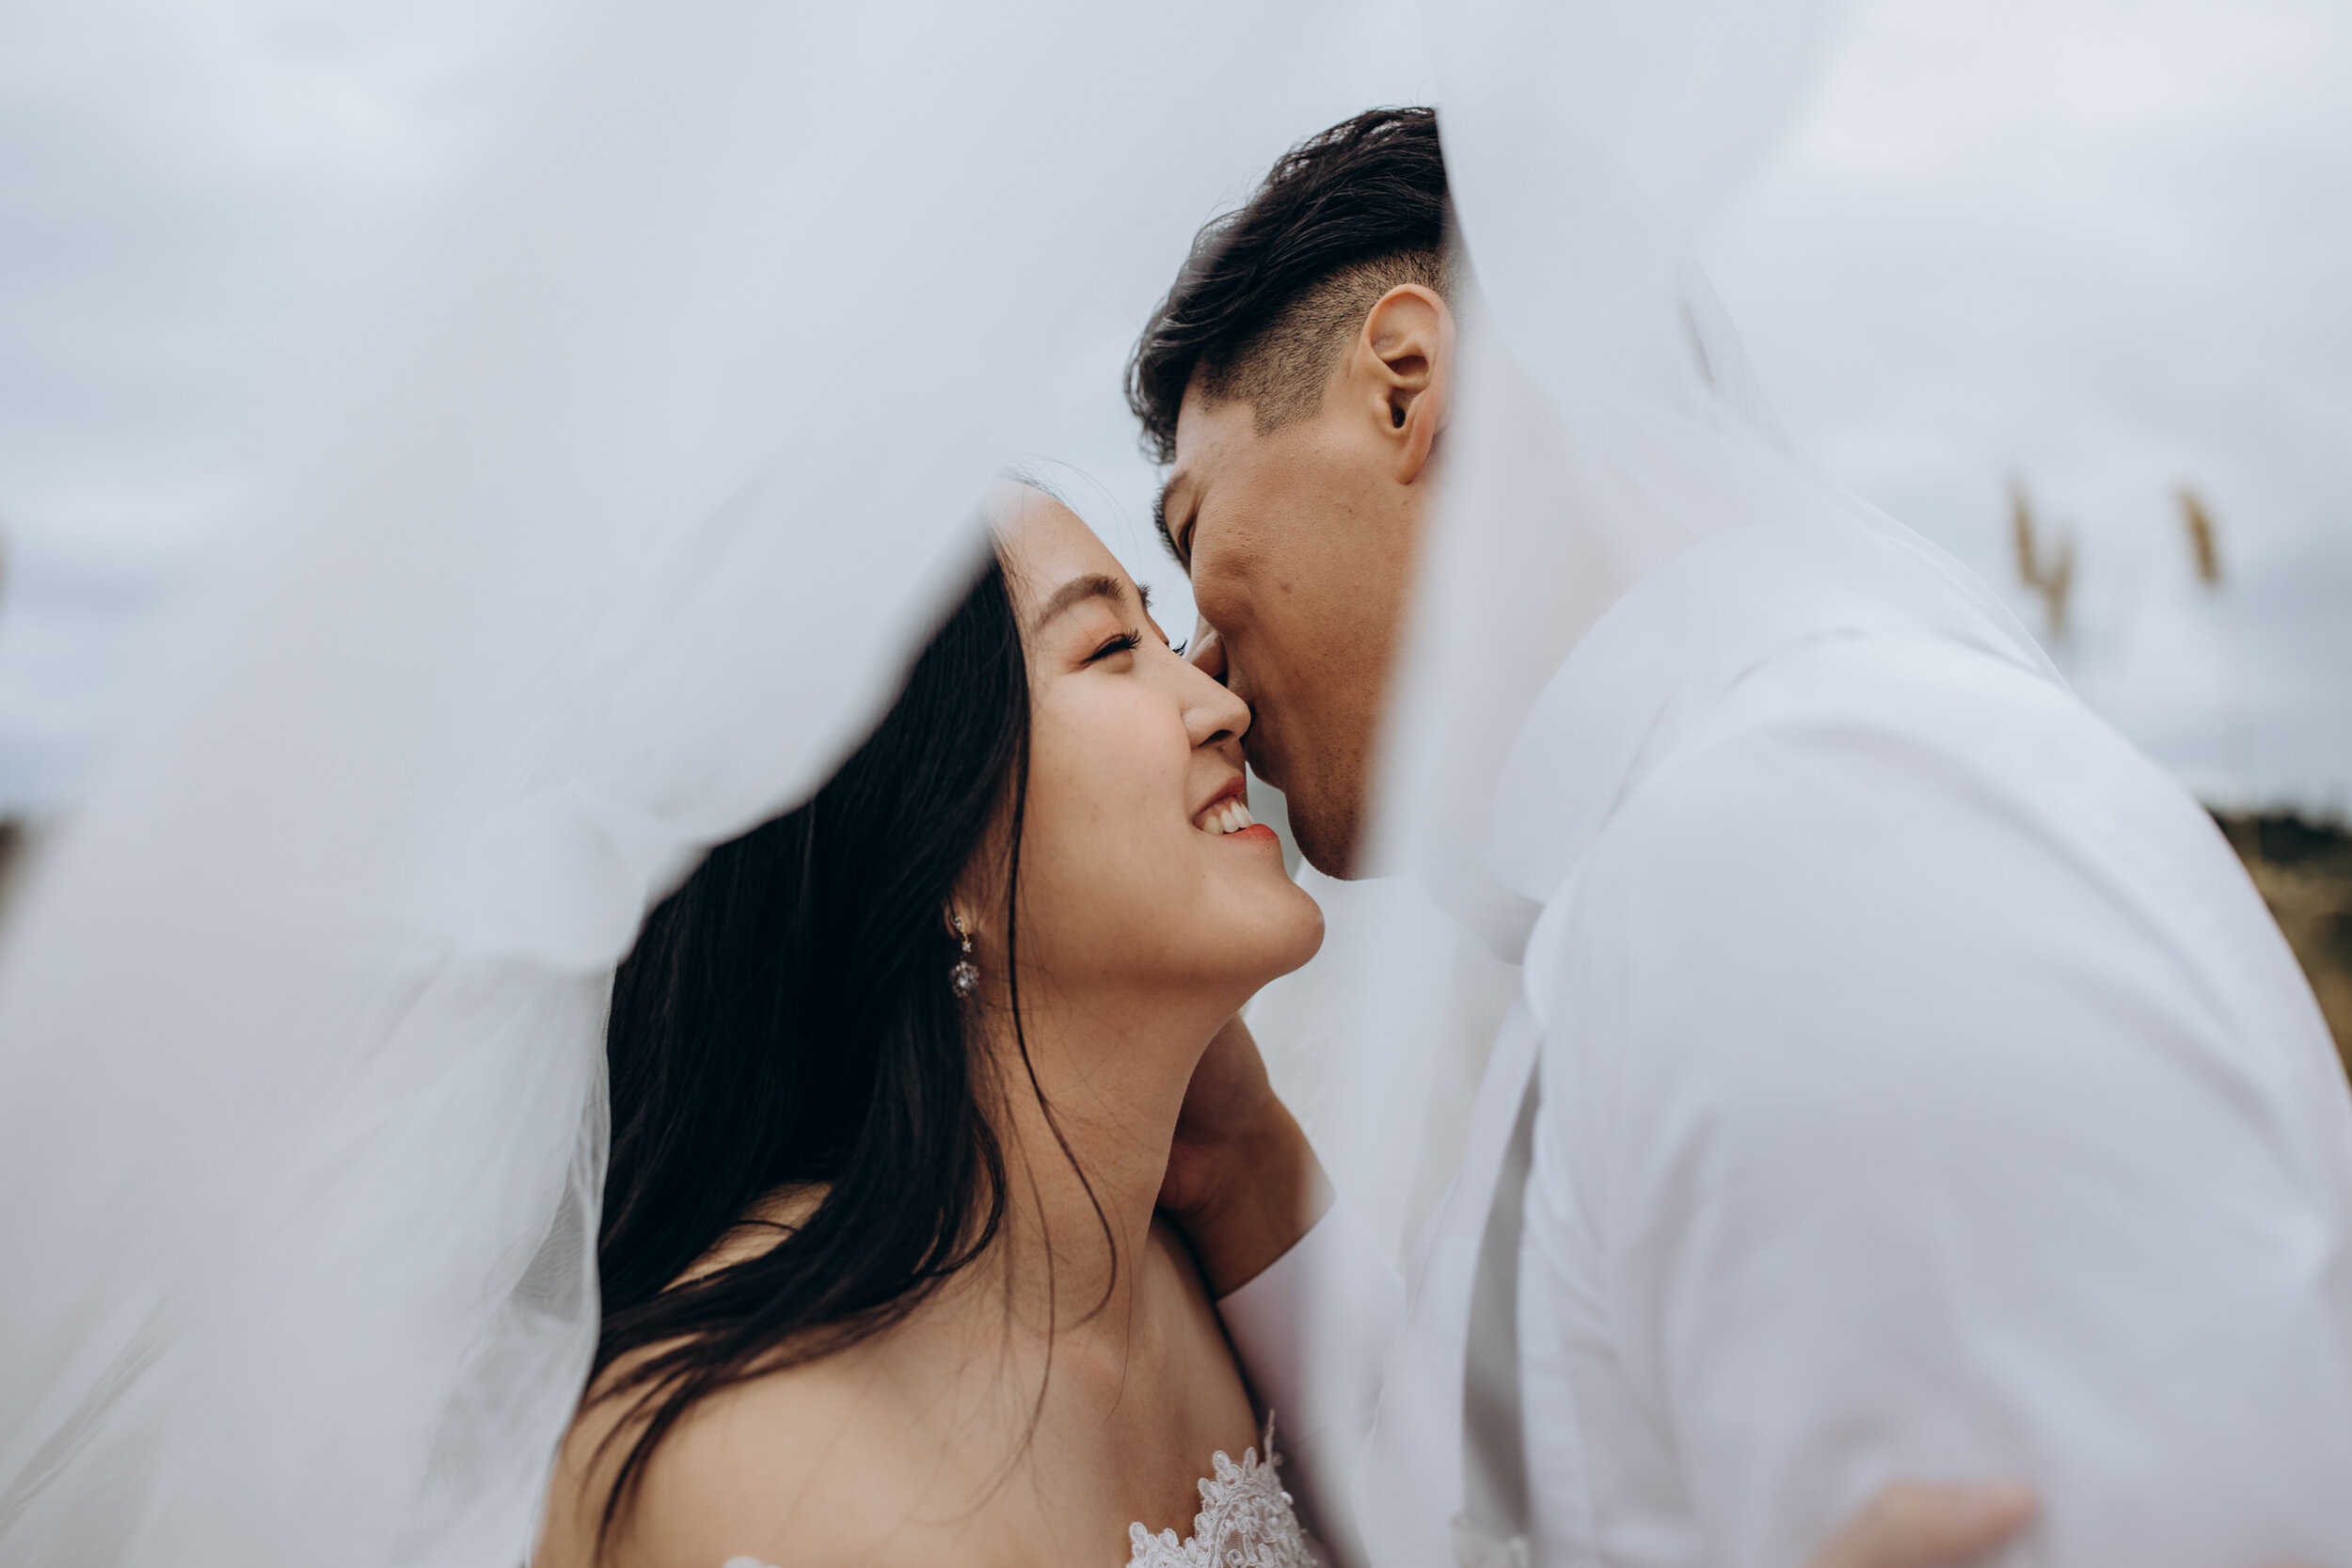 Wedding veil photos | bride and groom photos | Auckand wedding | Wanting Huang Photography 